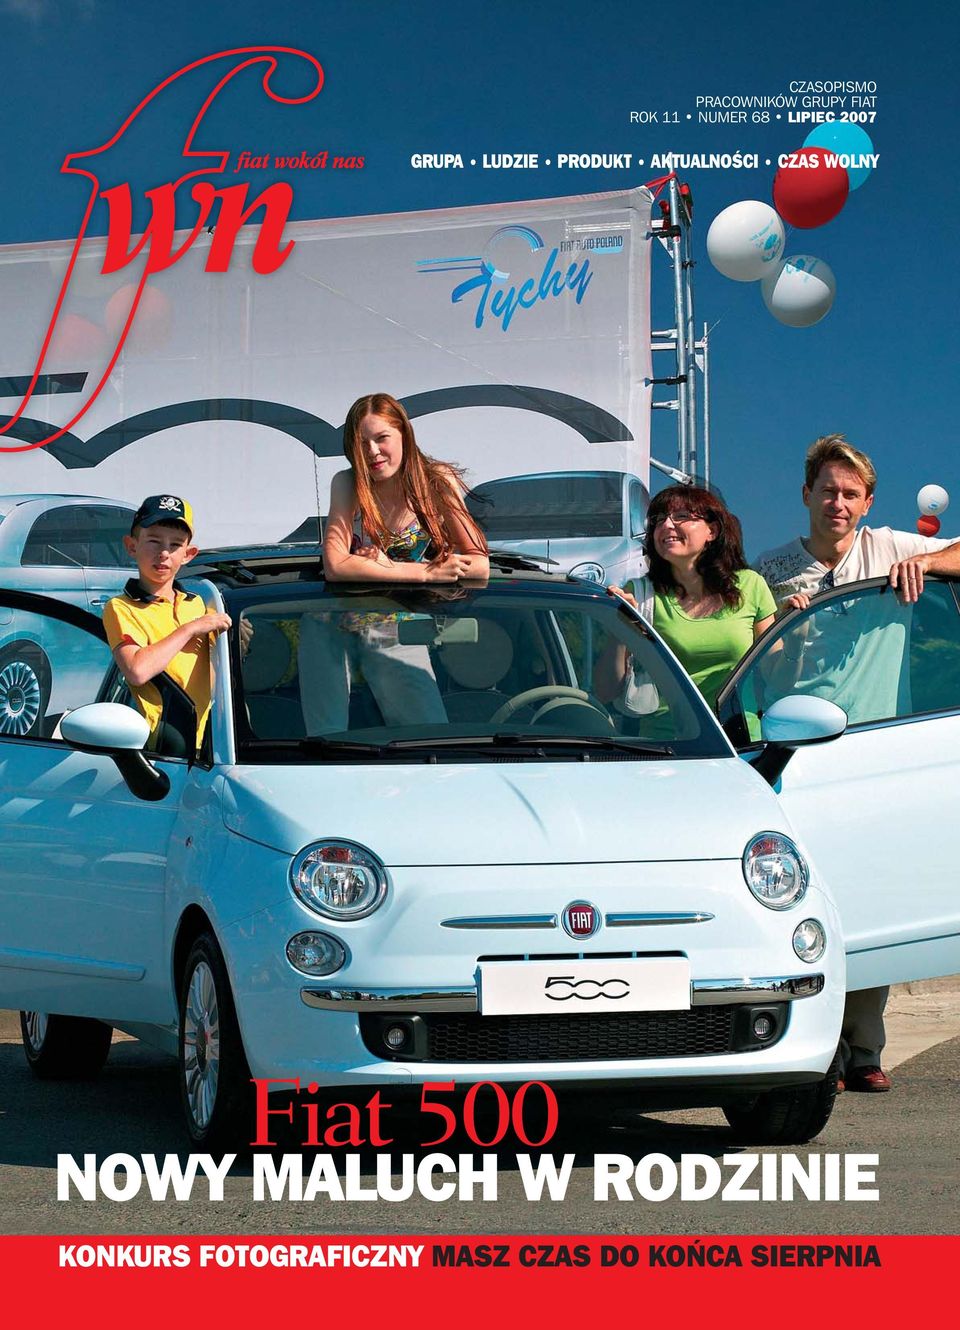 AKTUALNOÂCI CZAS WOLNY Fiat 500 NOWY MALUCH W